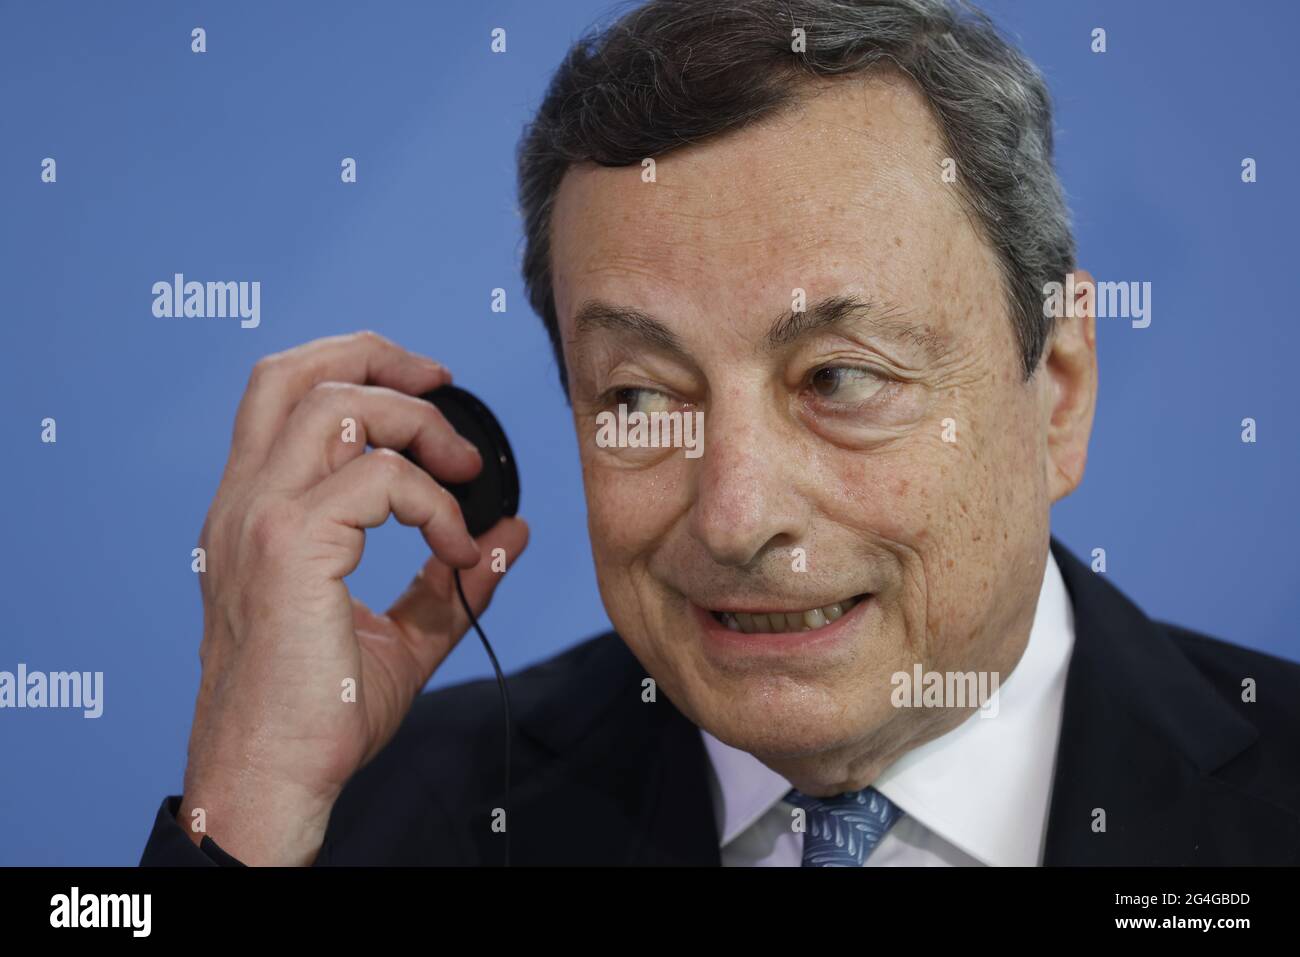 Berlin, Allemagne. 21 juin 2021. Mario Draghi, Premier ministre italien, tient une conférence de presse conjointe avec la chancelière Merkel à la Chancellerie fédérale. Draghi est à Berlin pour sa visite inaugurale. Crédit : ODD Andersen/AFP-Pool/dpa/Alay Live News Banque D'Images